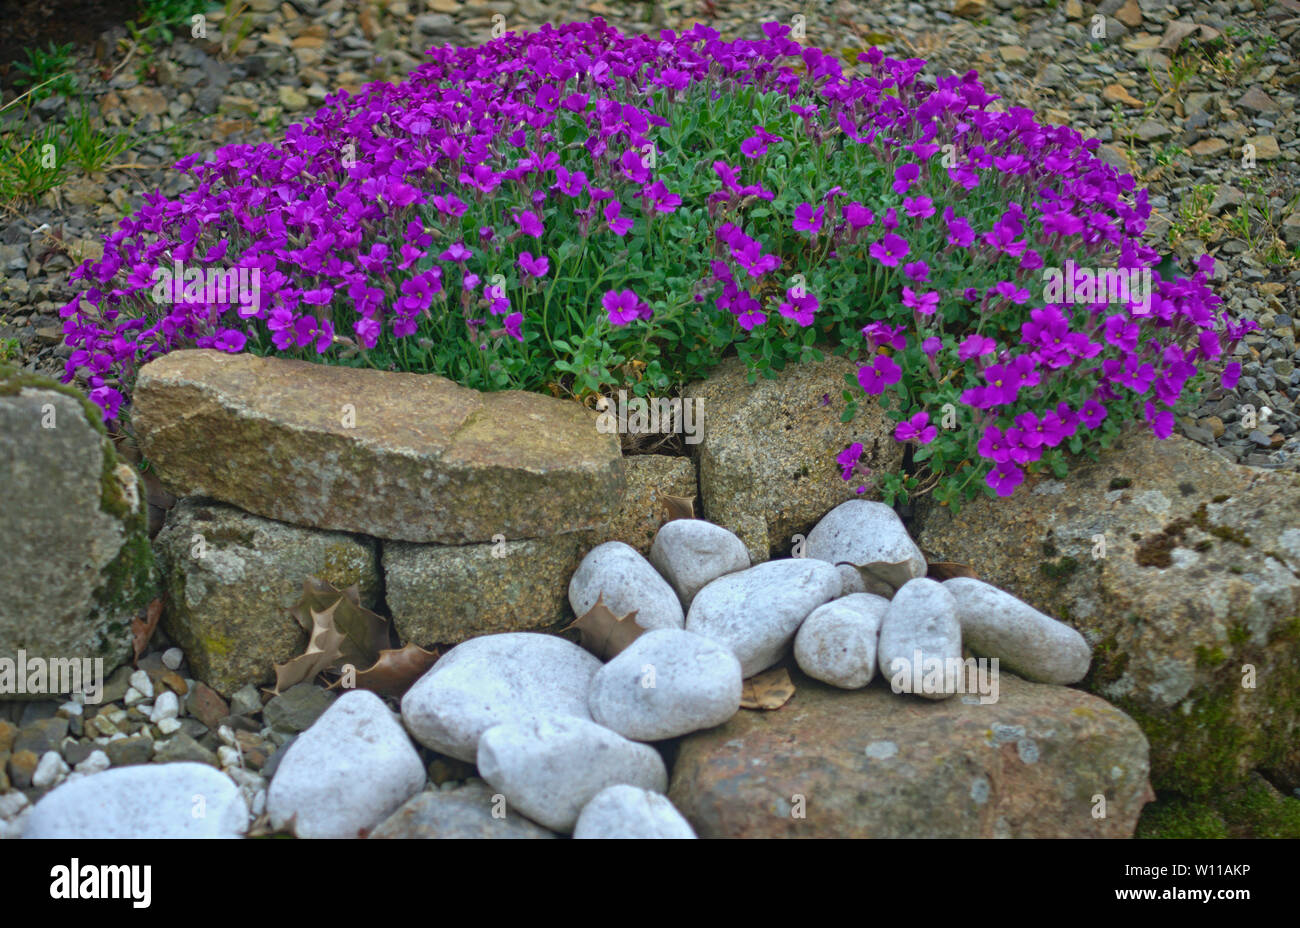 La floraison des plantes avec de petites fleurs violettes sur mur de pierre  Photo Stock - Alamy